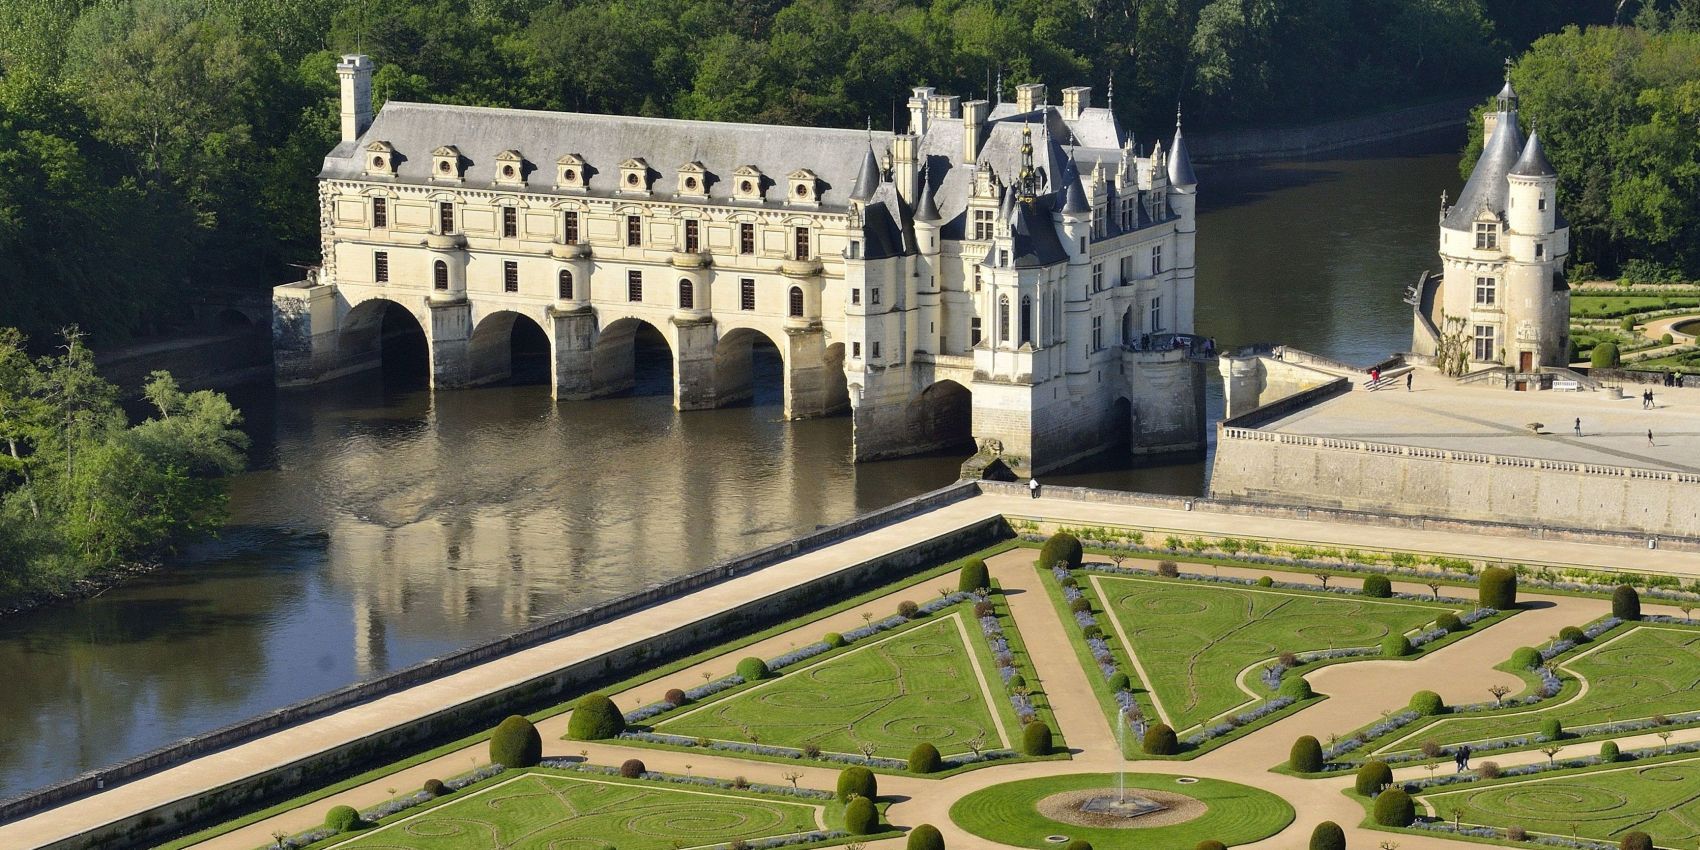 Château De Chenonceau Backgrounds on Wallpapers Vista